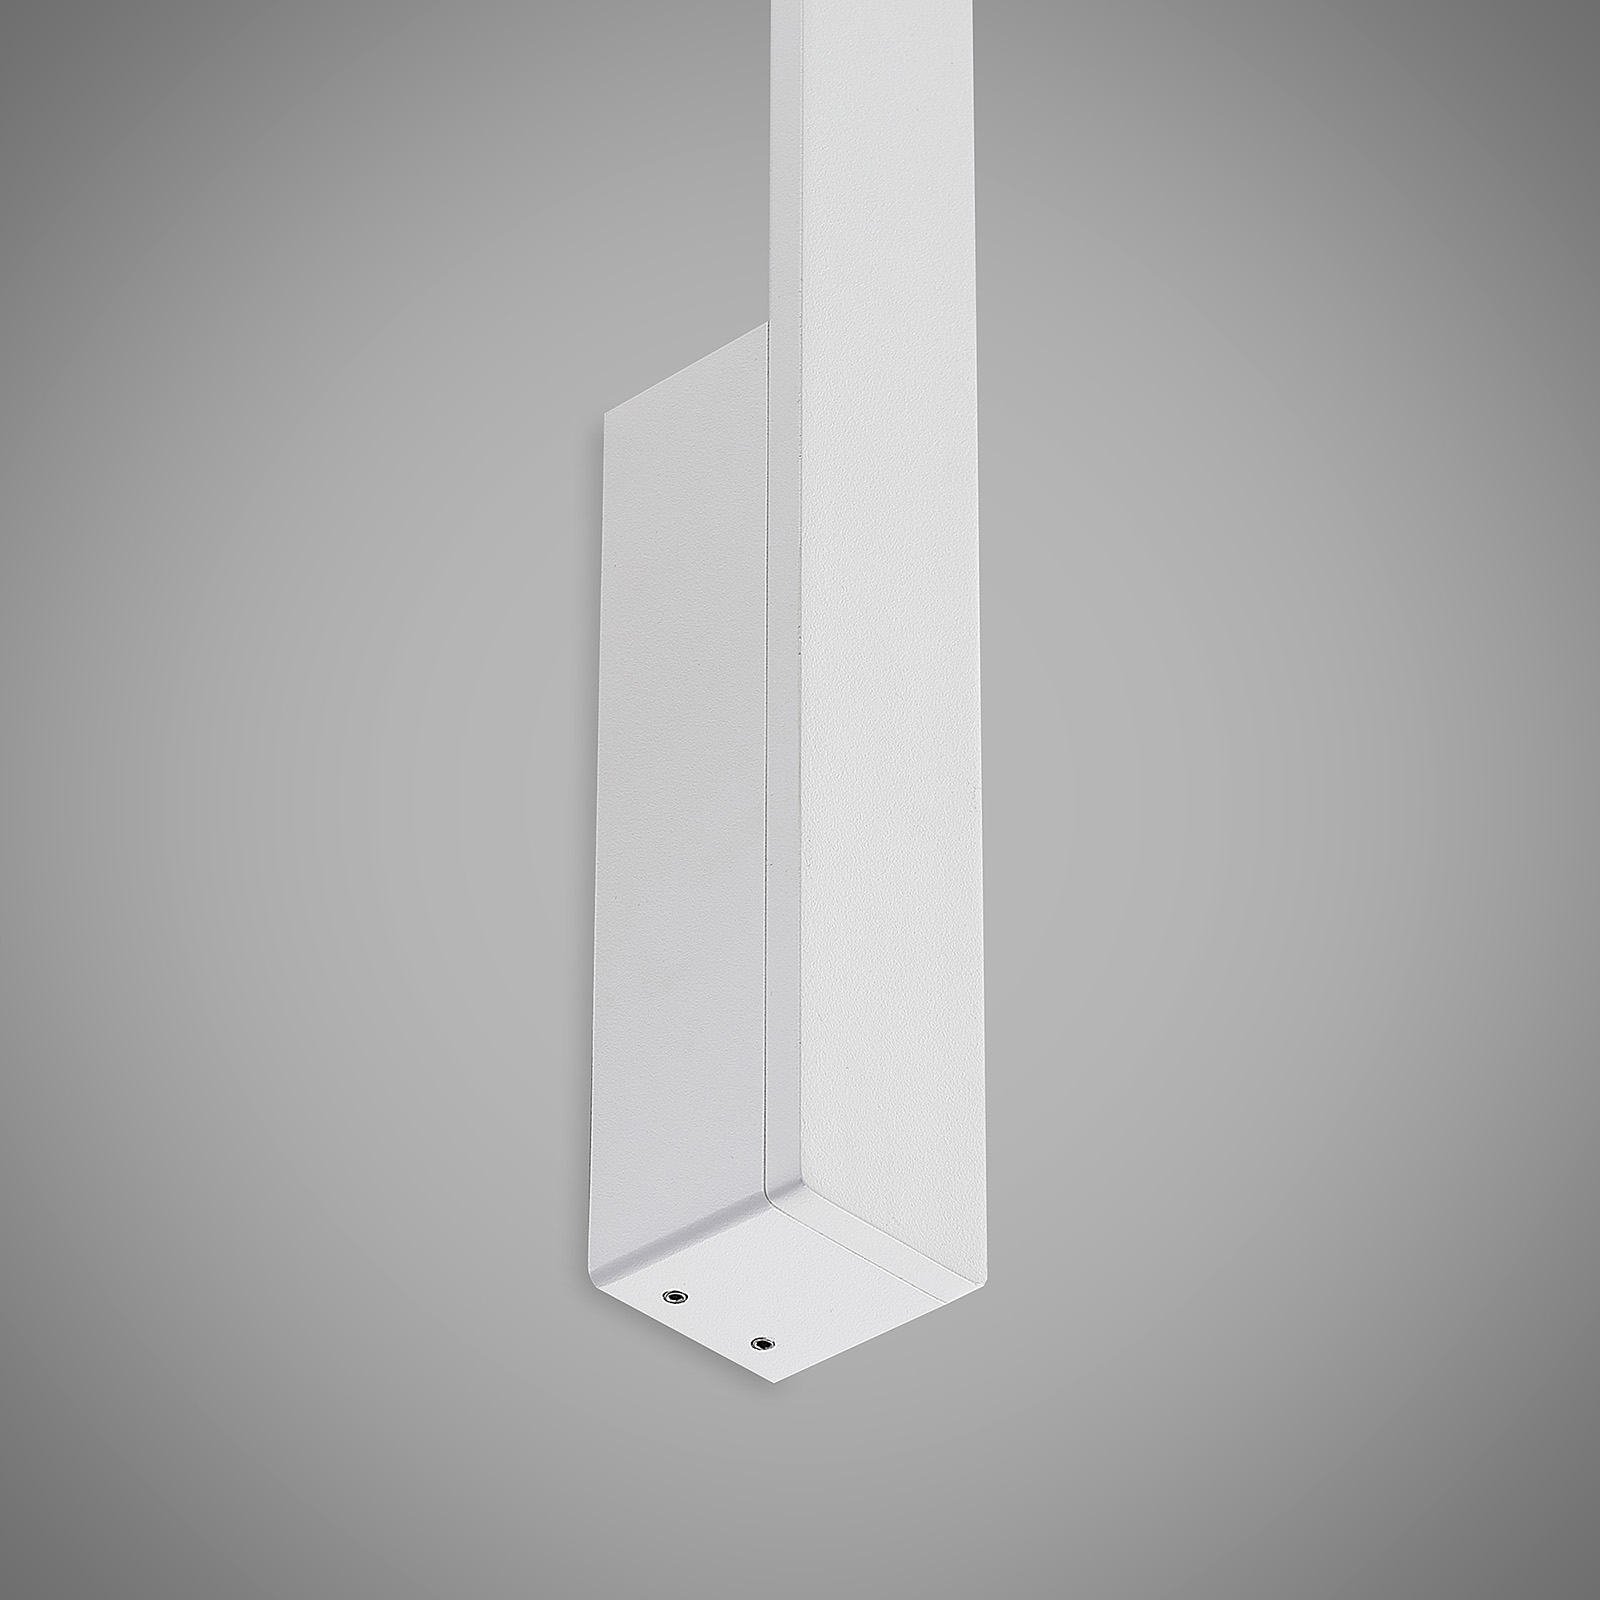 Arcchio Ivano LED nástěnné světlo, 170 cm, bílé